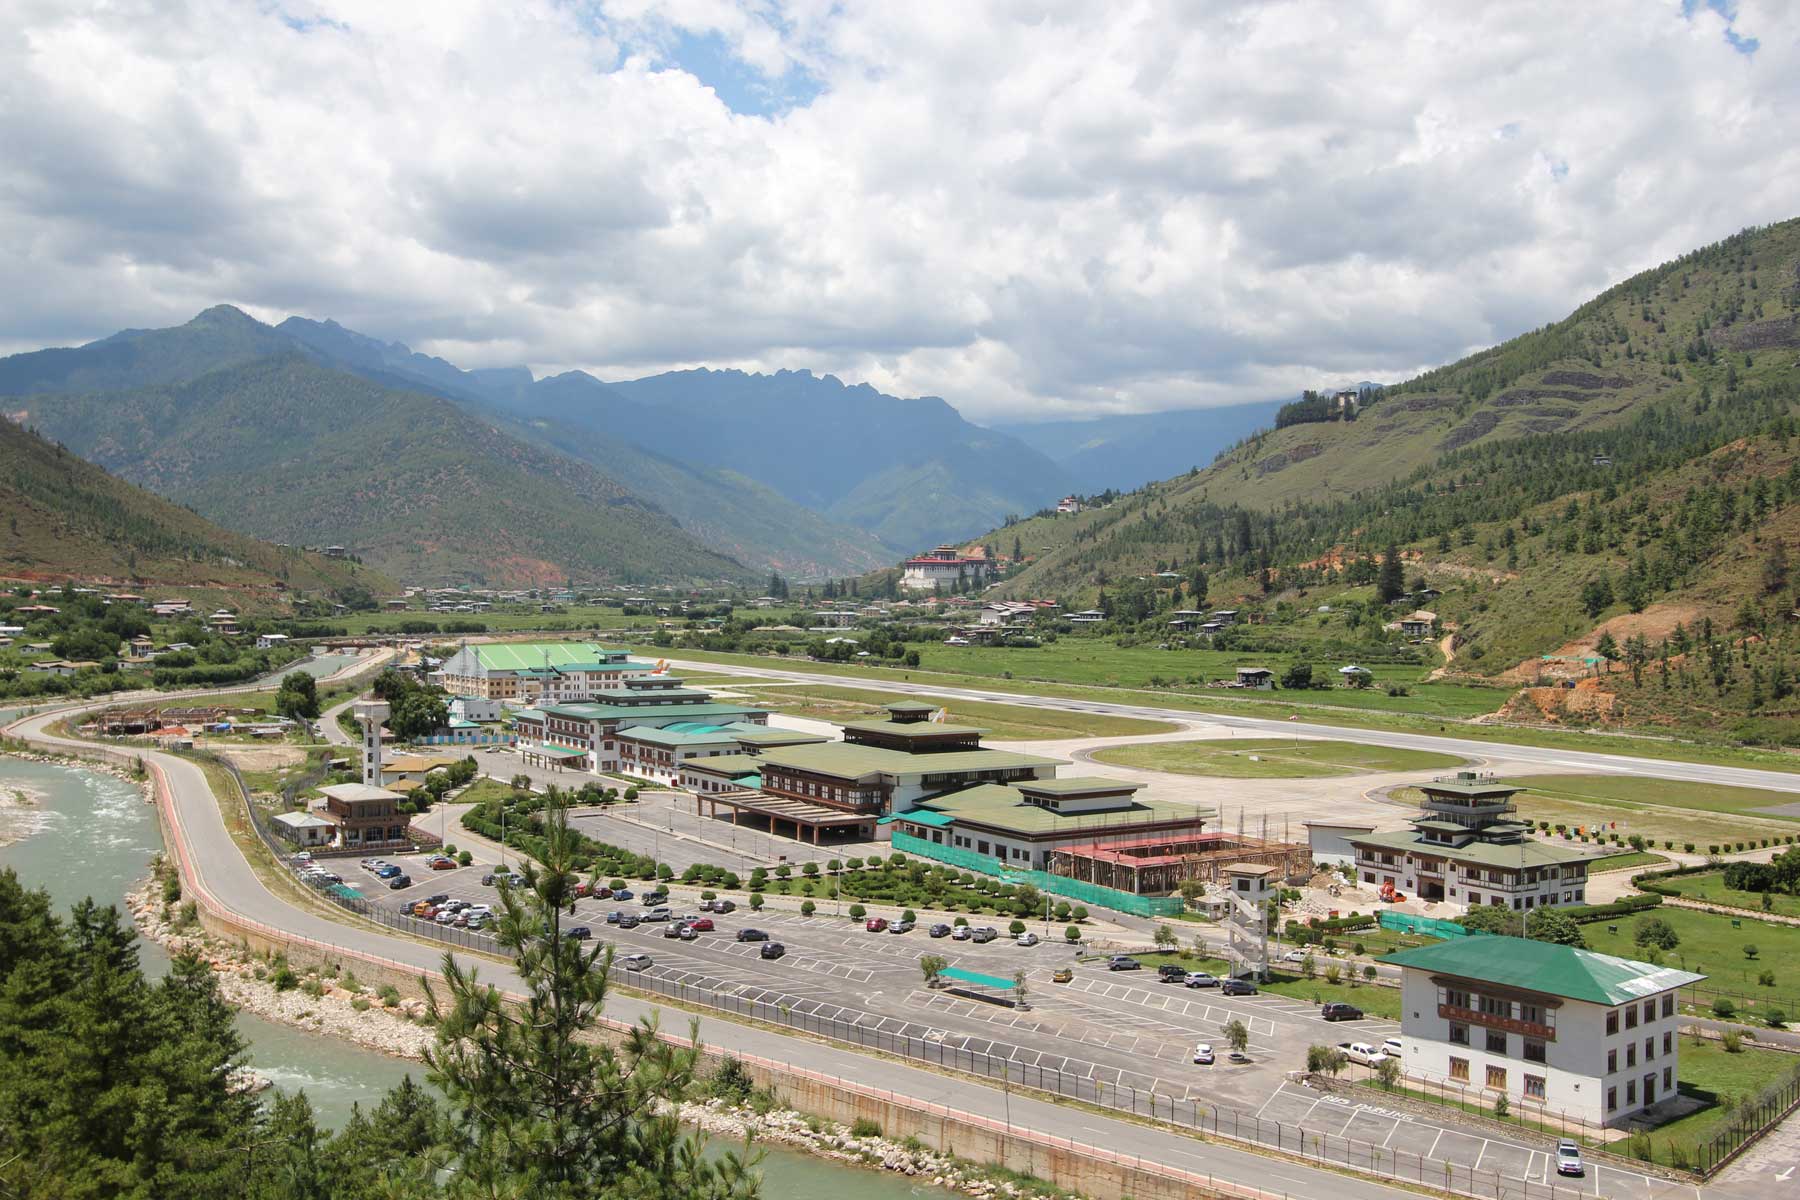 Аэропорт бутана. Паро бутан. Paro International Airport, Bhutan. Долина паро аэропорт. Аэропорт паро в королевстве бутан.